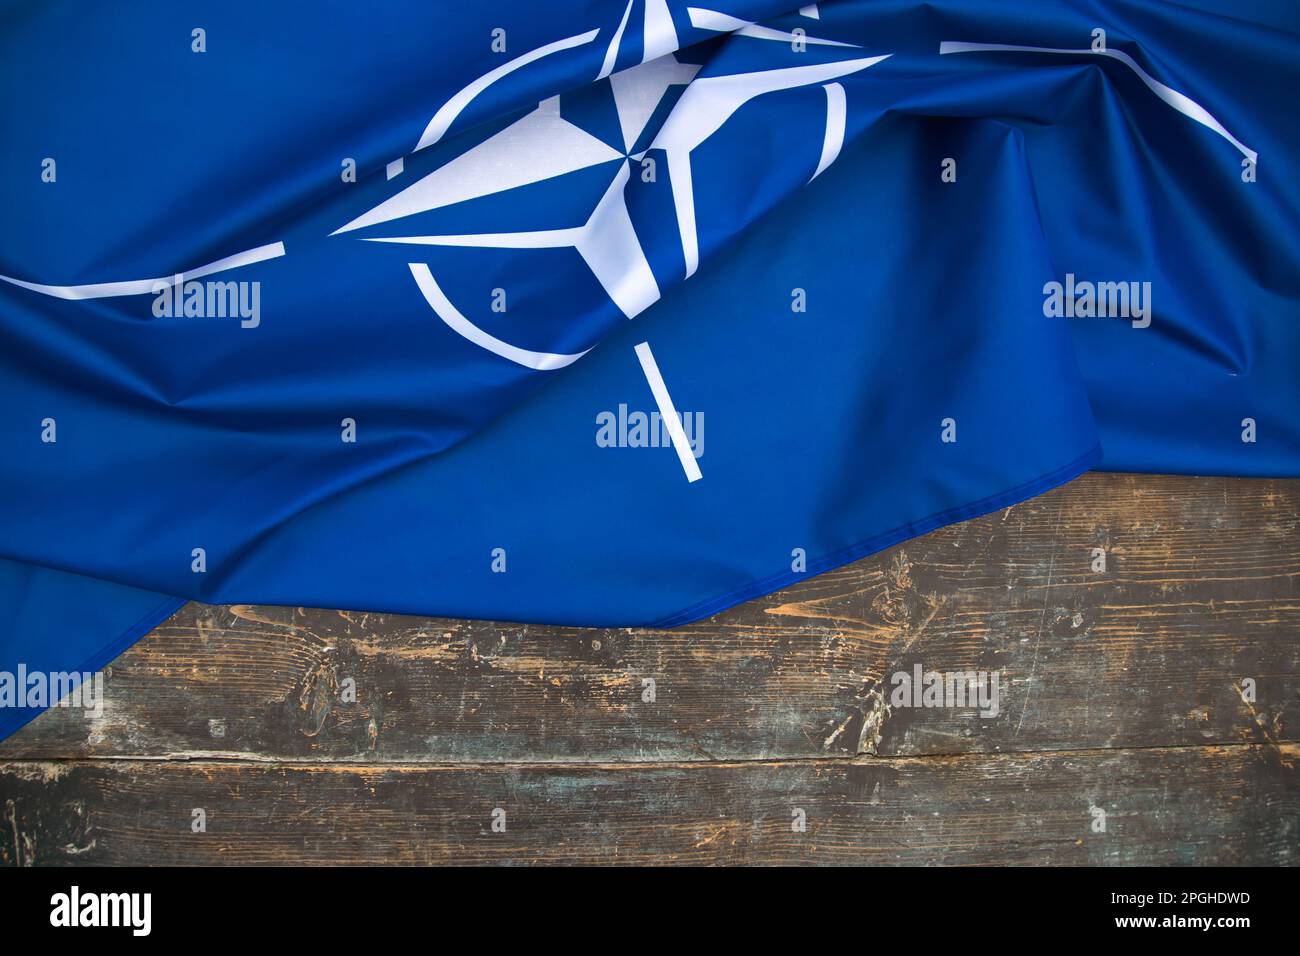 Drapeau de l'OTAN (Organisation du Traité de l'Atlantique Nord). L'OTAN est une alliance militaire internationale qui constitue un système de sécurité collective Banque D'Images